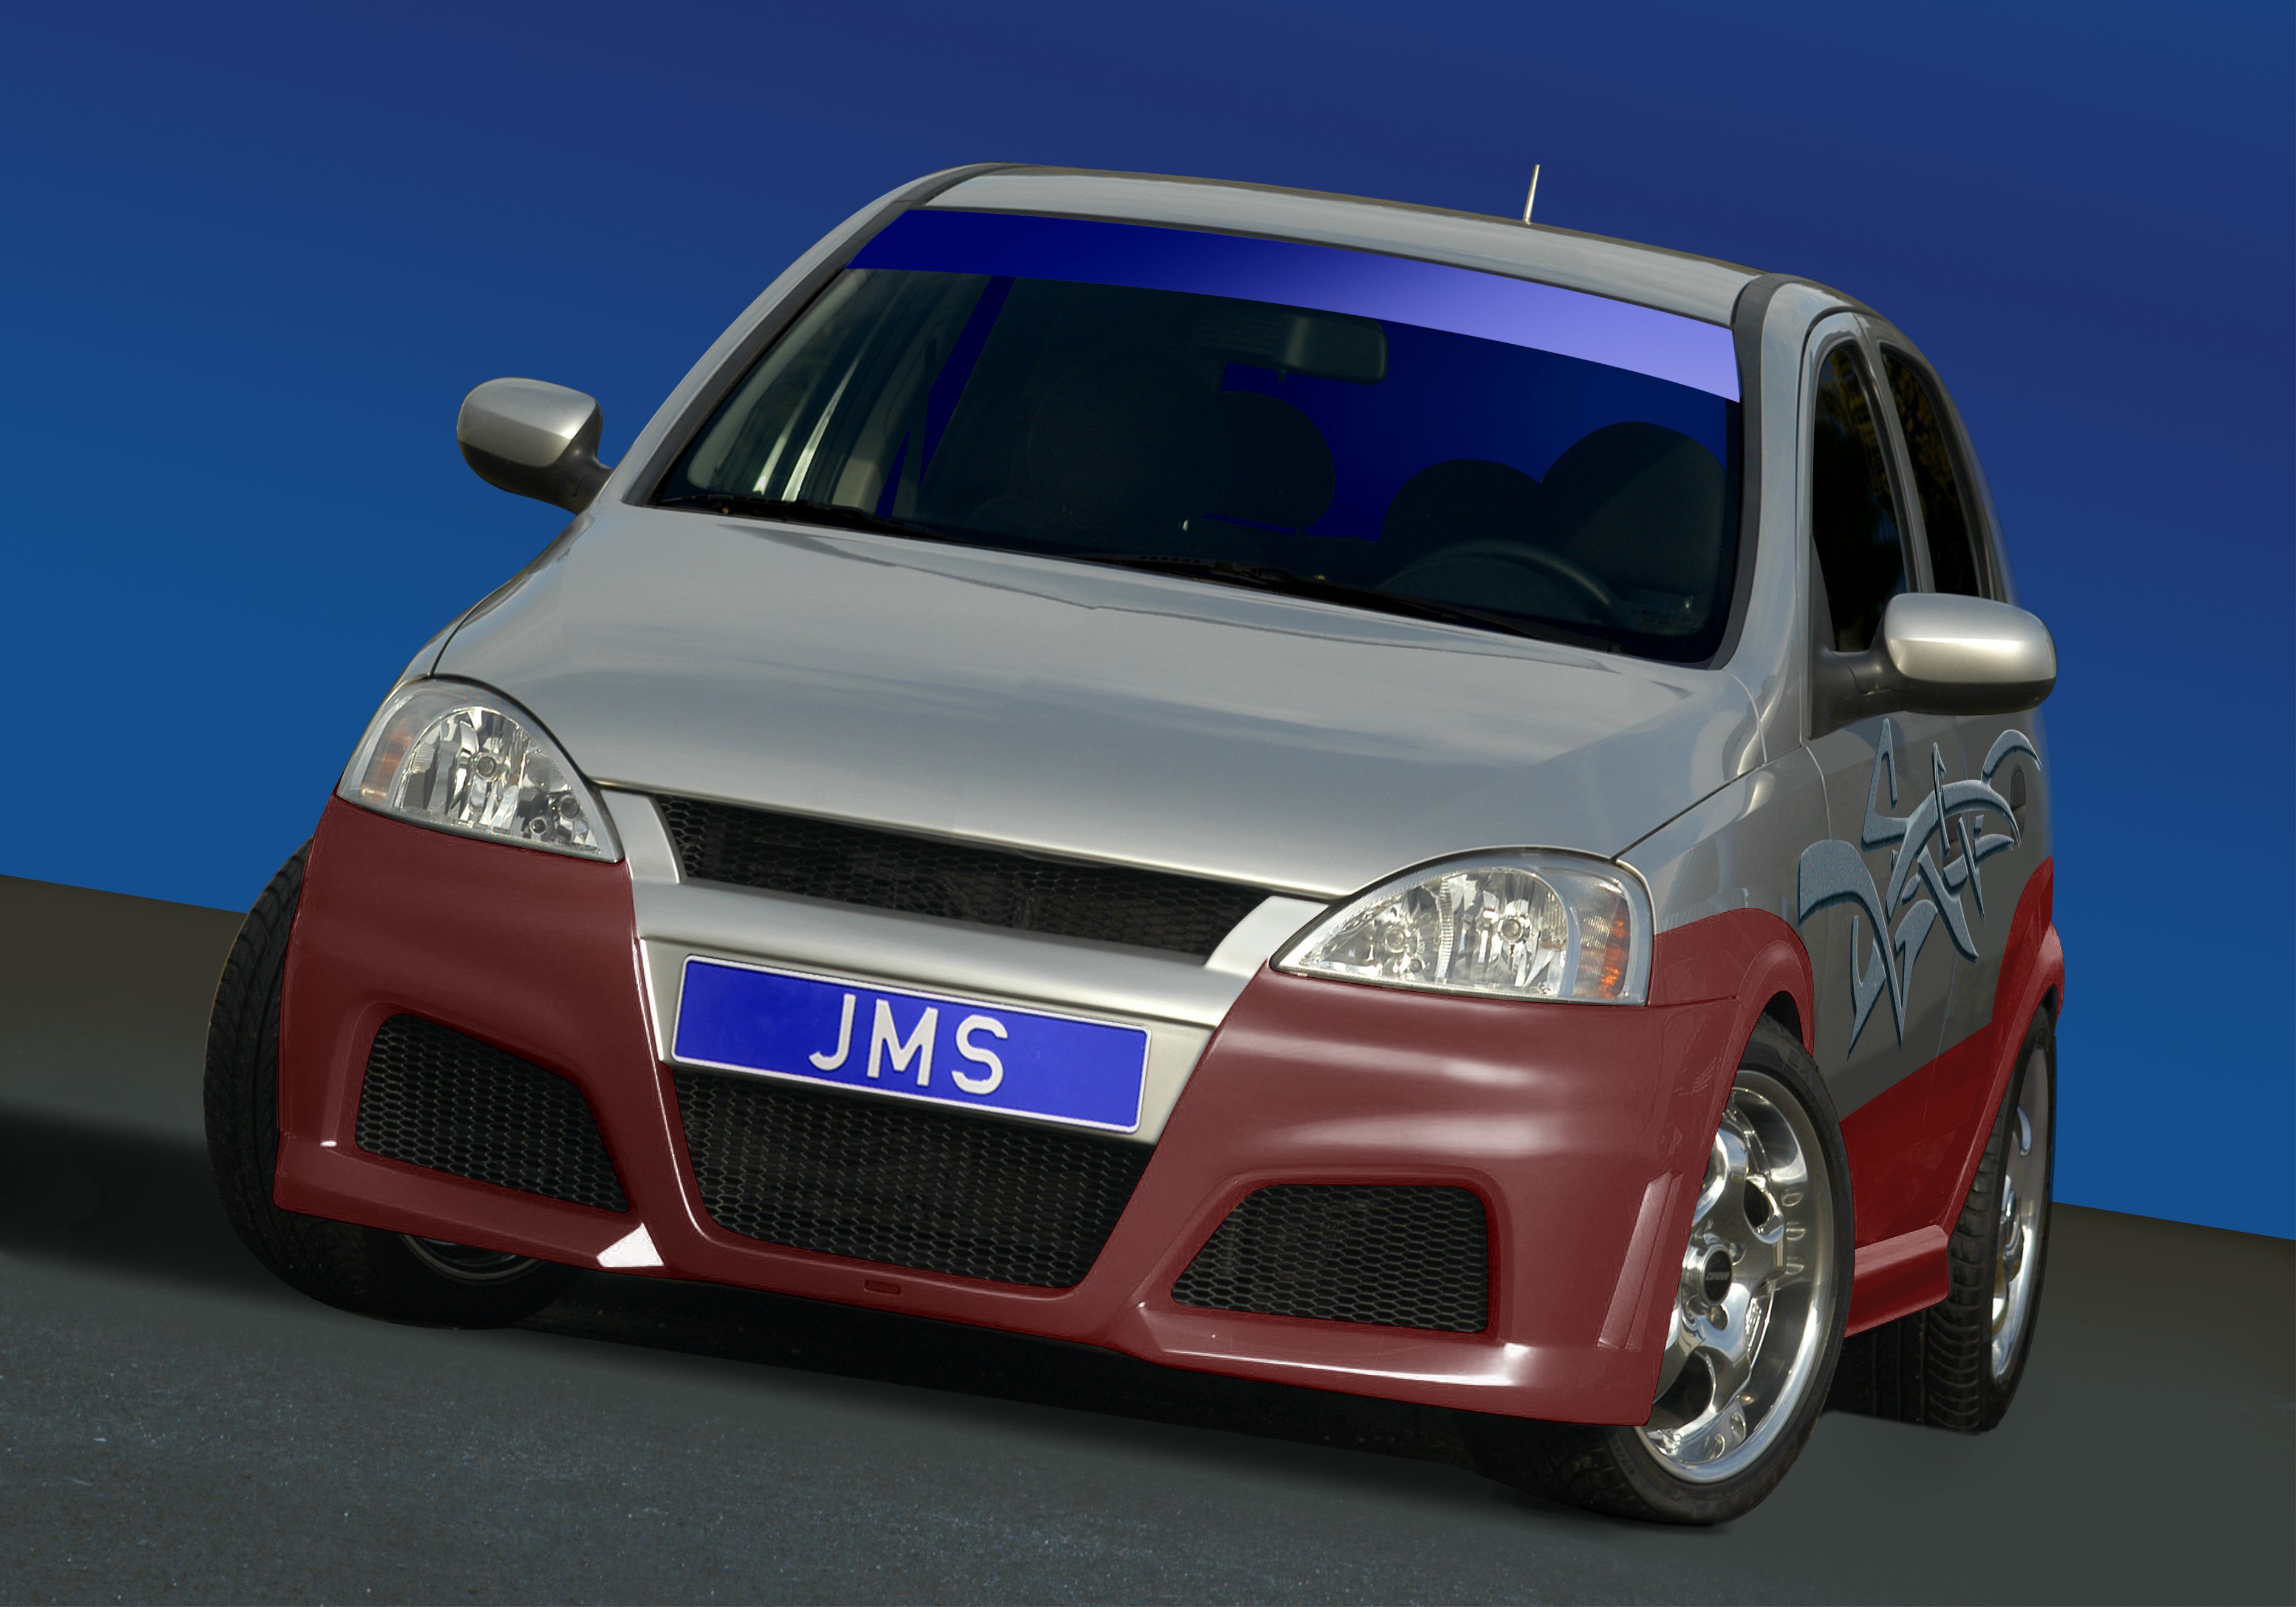 JMS NEWS Corsa C Racelook, JMS - Fahrzeugteile GmbH, Story - PresseBox